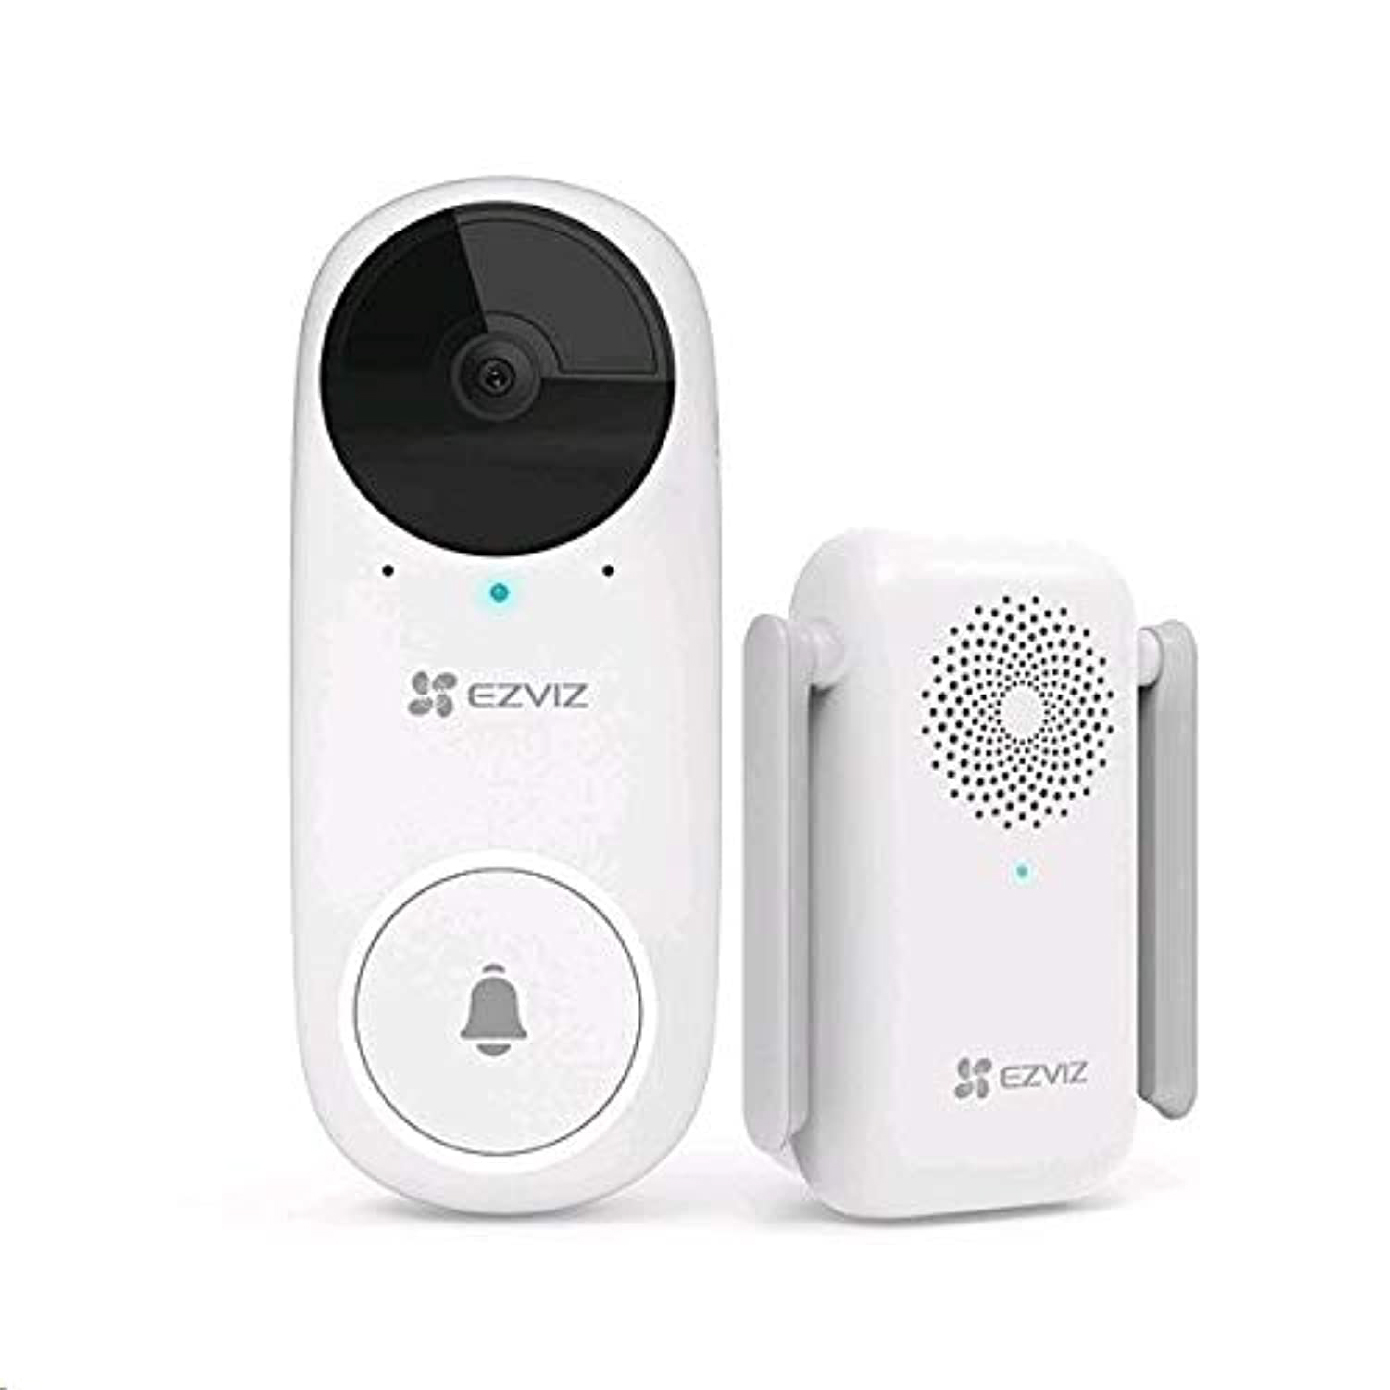 Ezviz DB2C Ring Video Doorbell